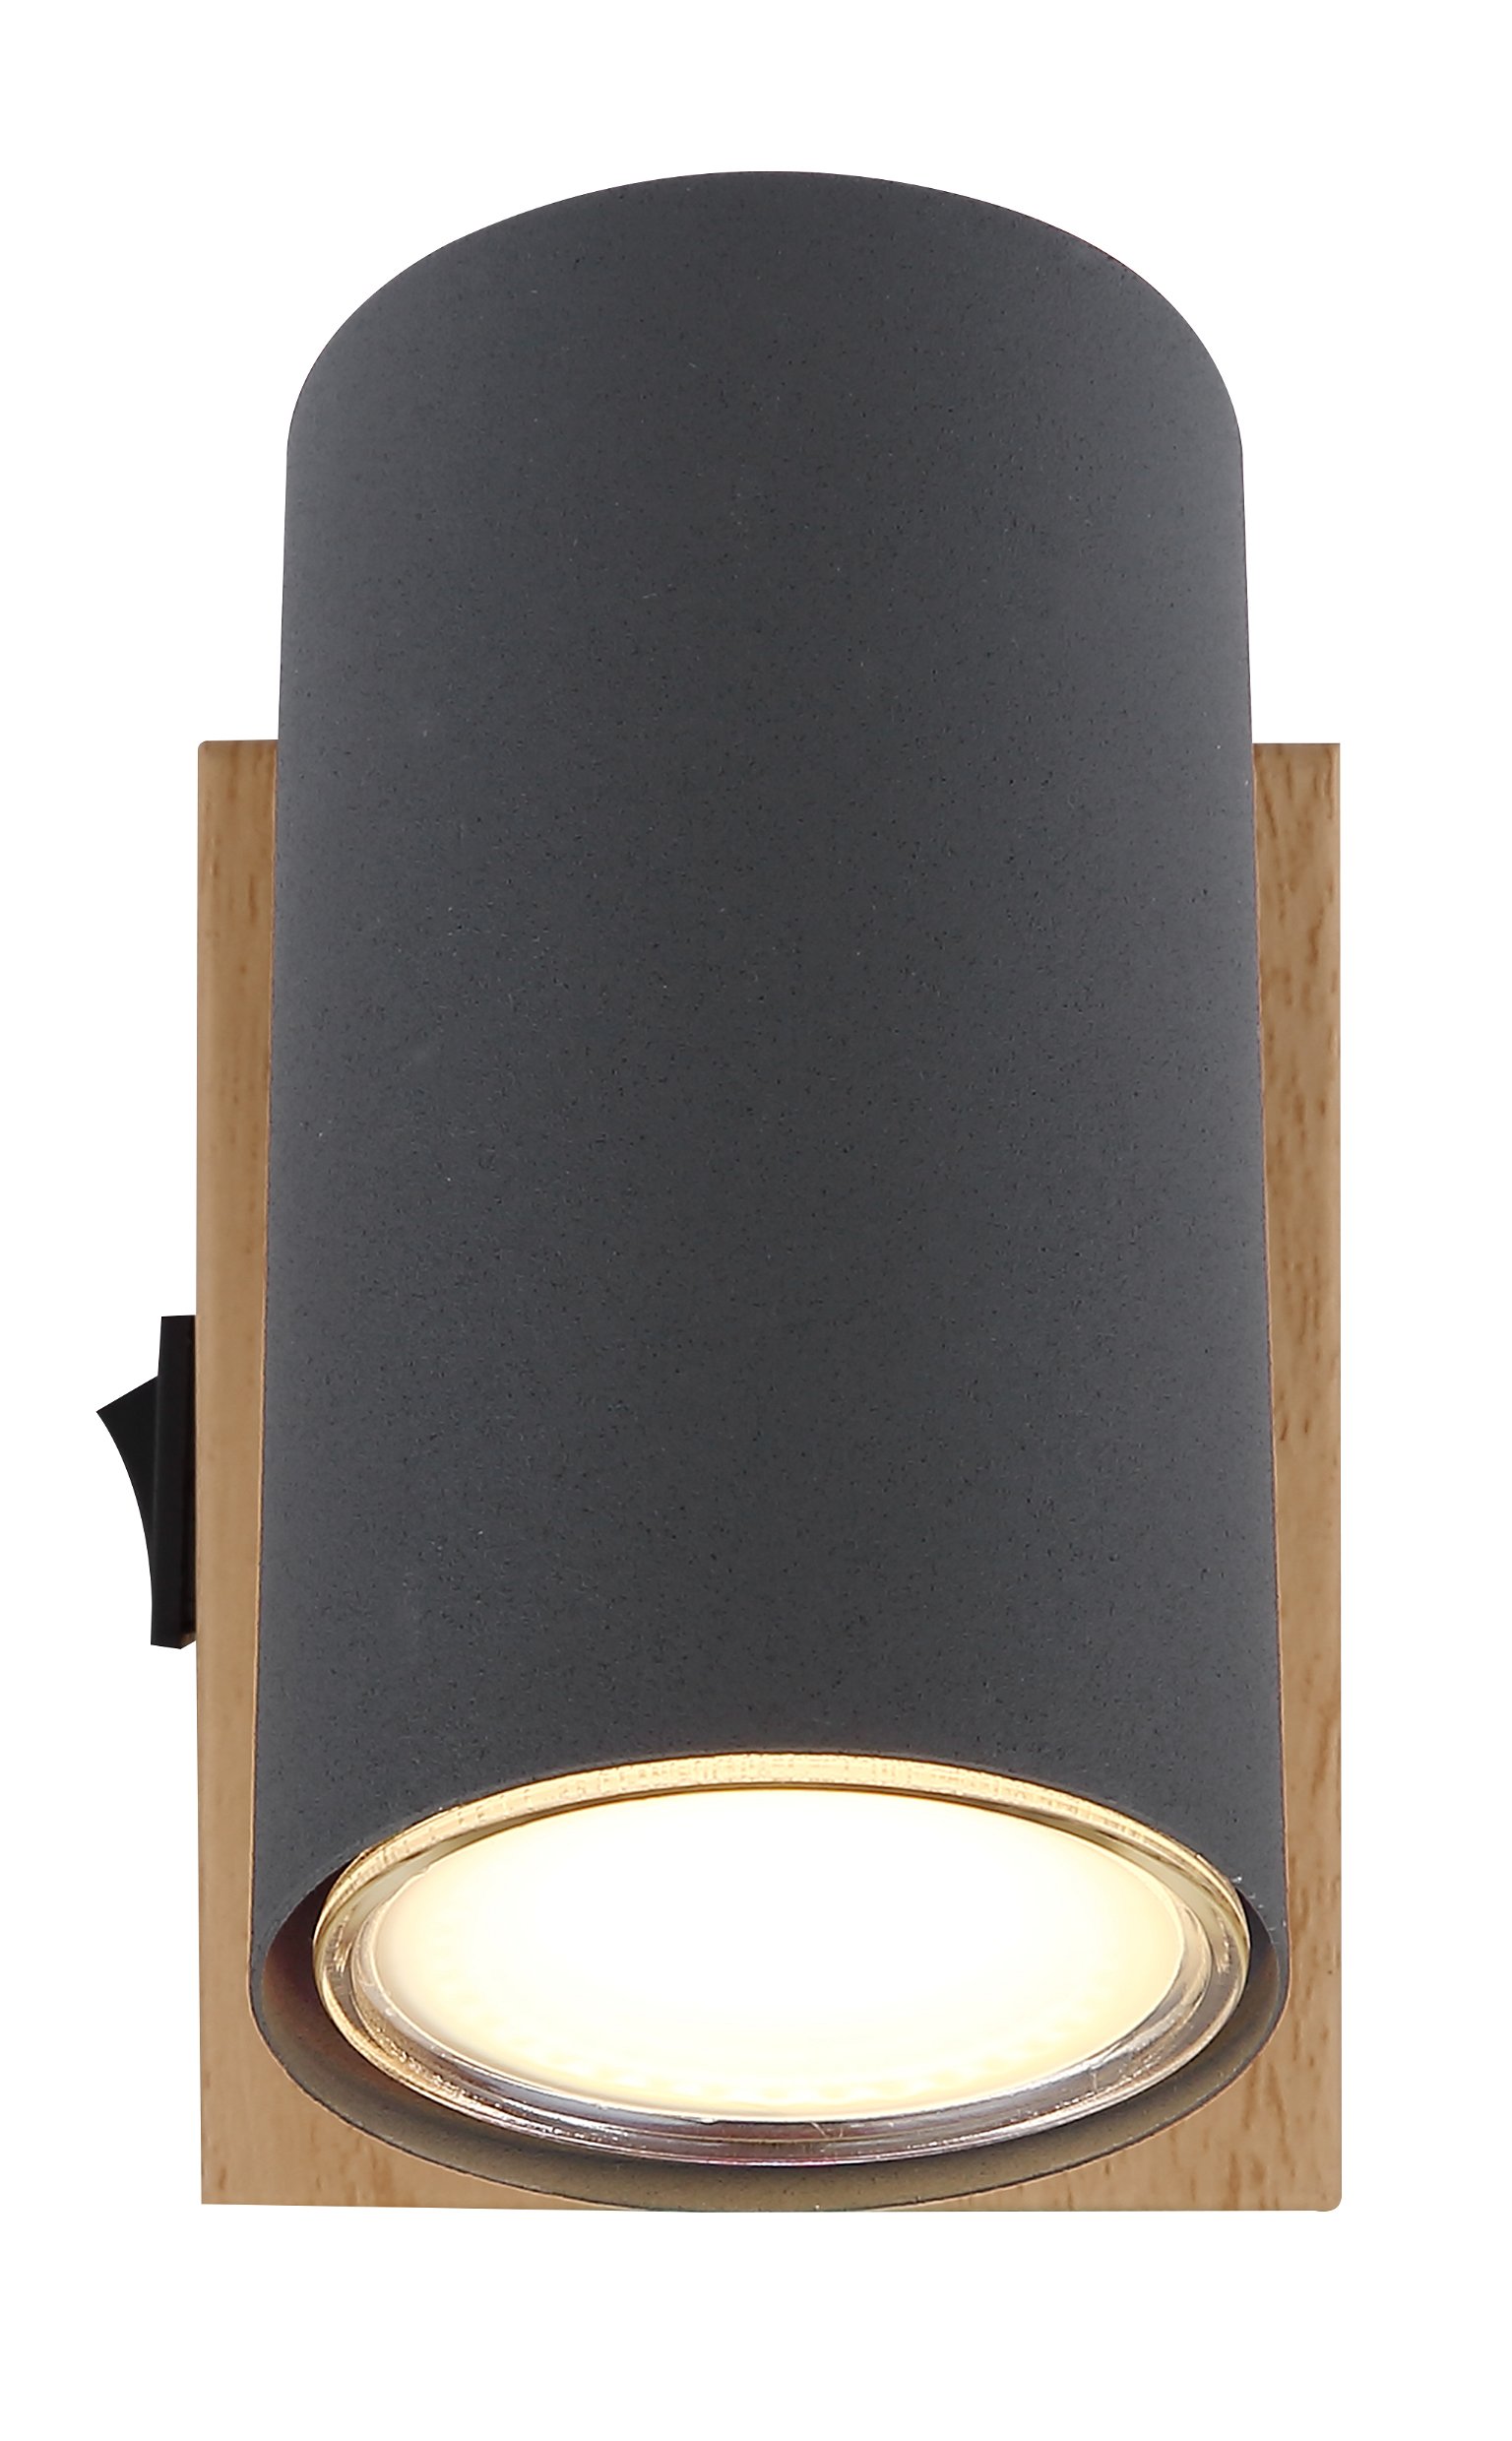 Taškinis šviestuvas GLOBO Robby, 1 x GU10, 25W, medžio/ antracito sp., 7 x 10 x 12 cm - 2